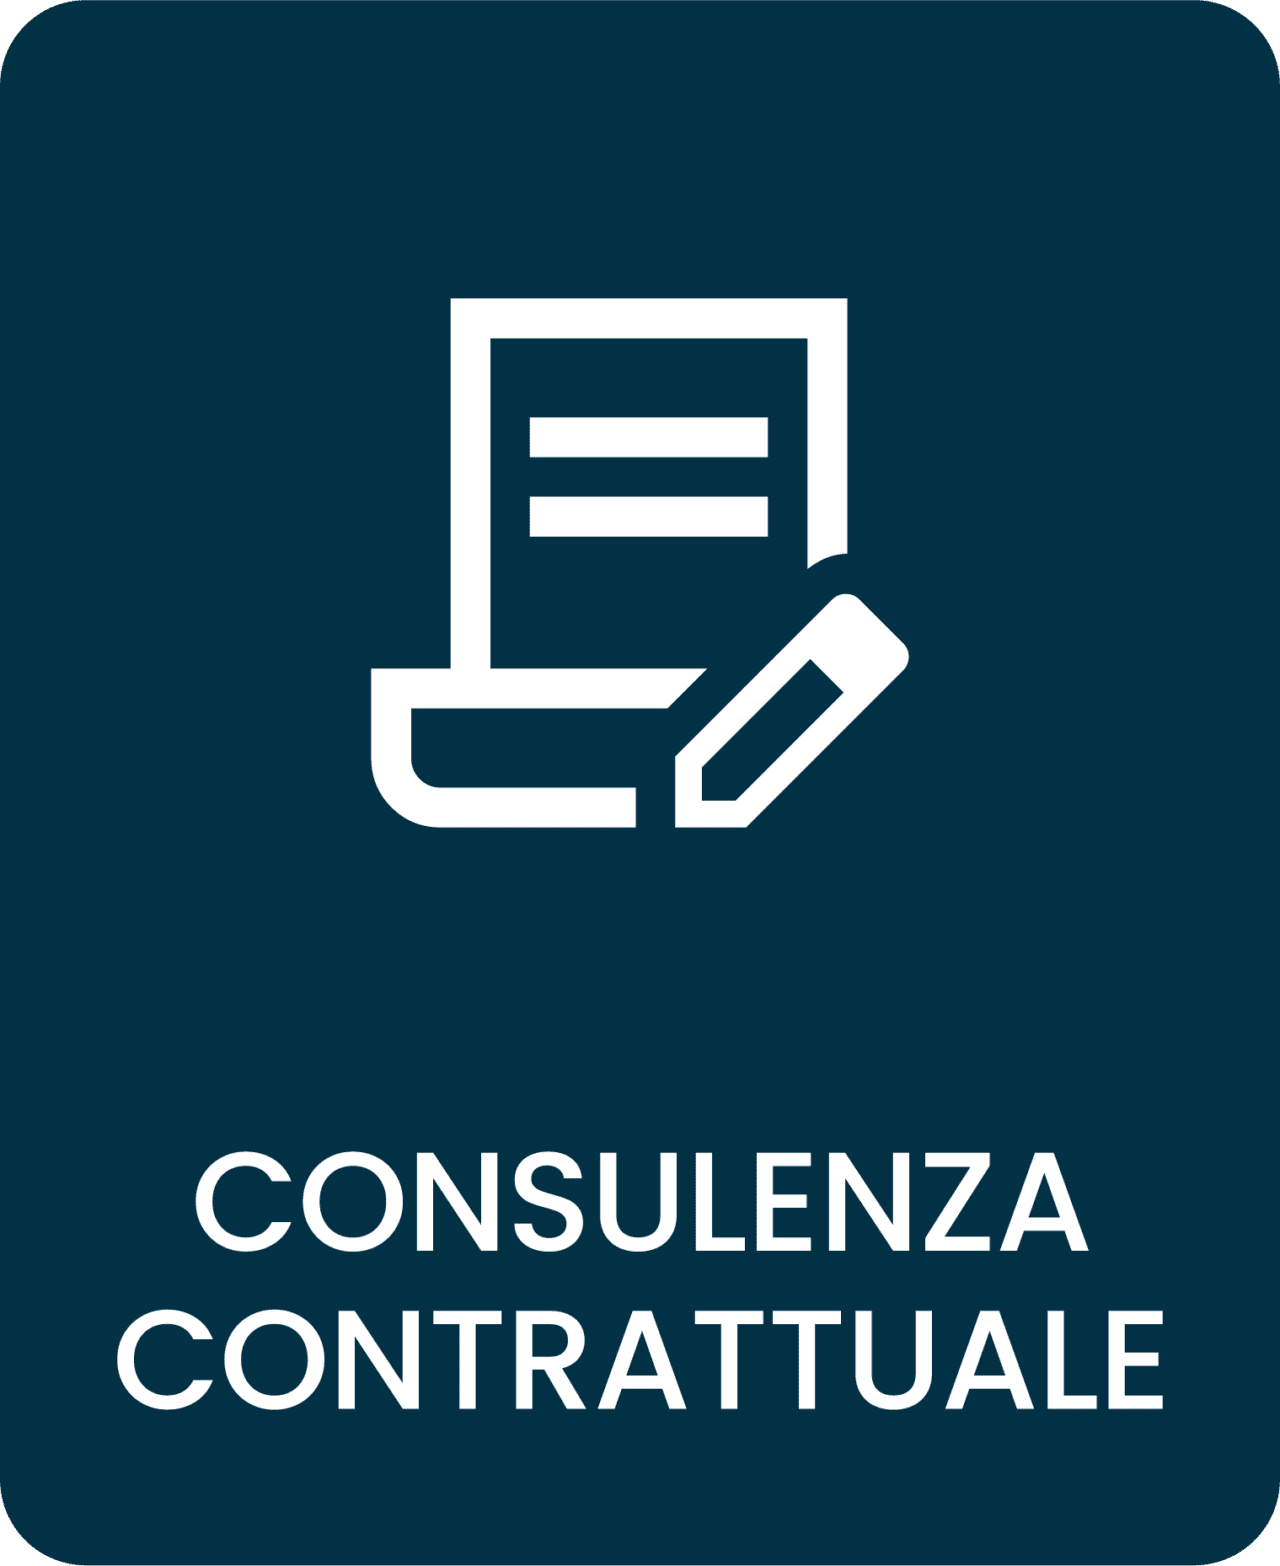 Consulenza contrattuale